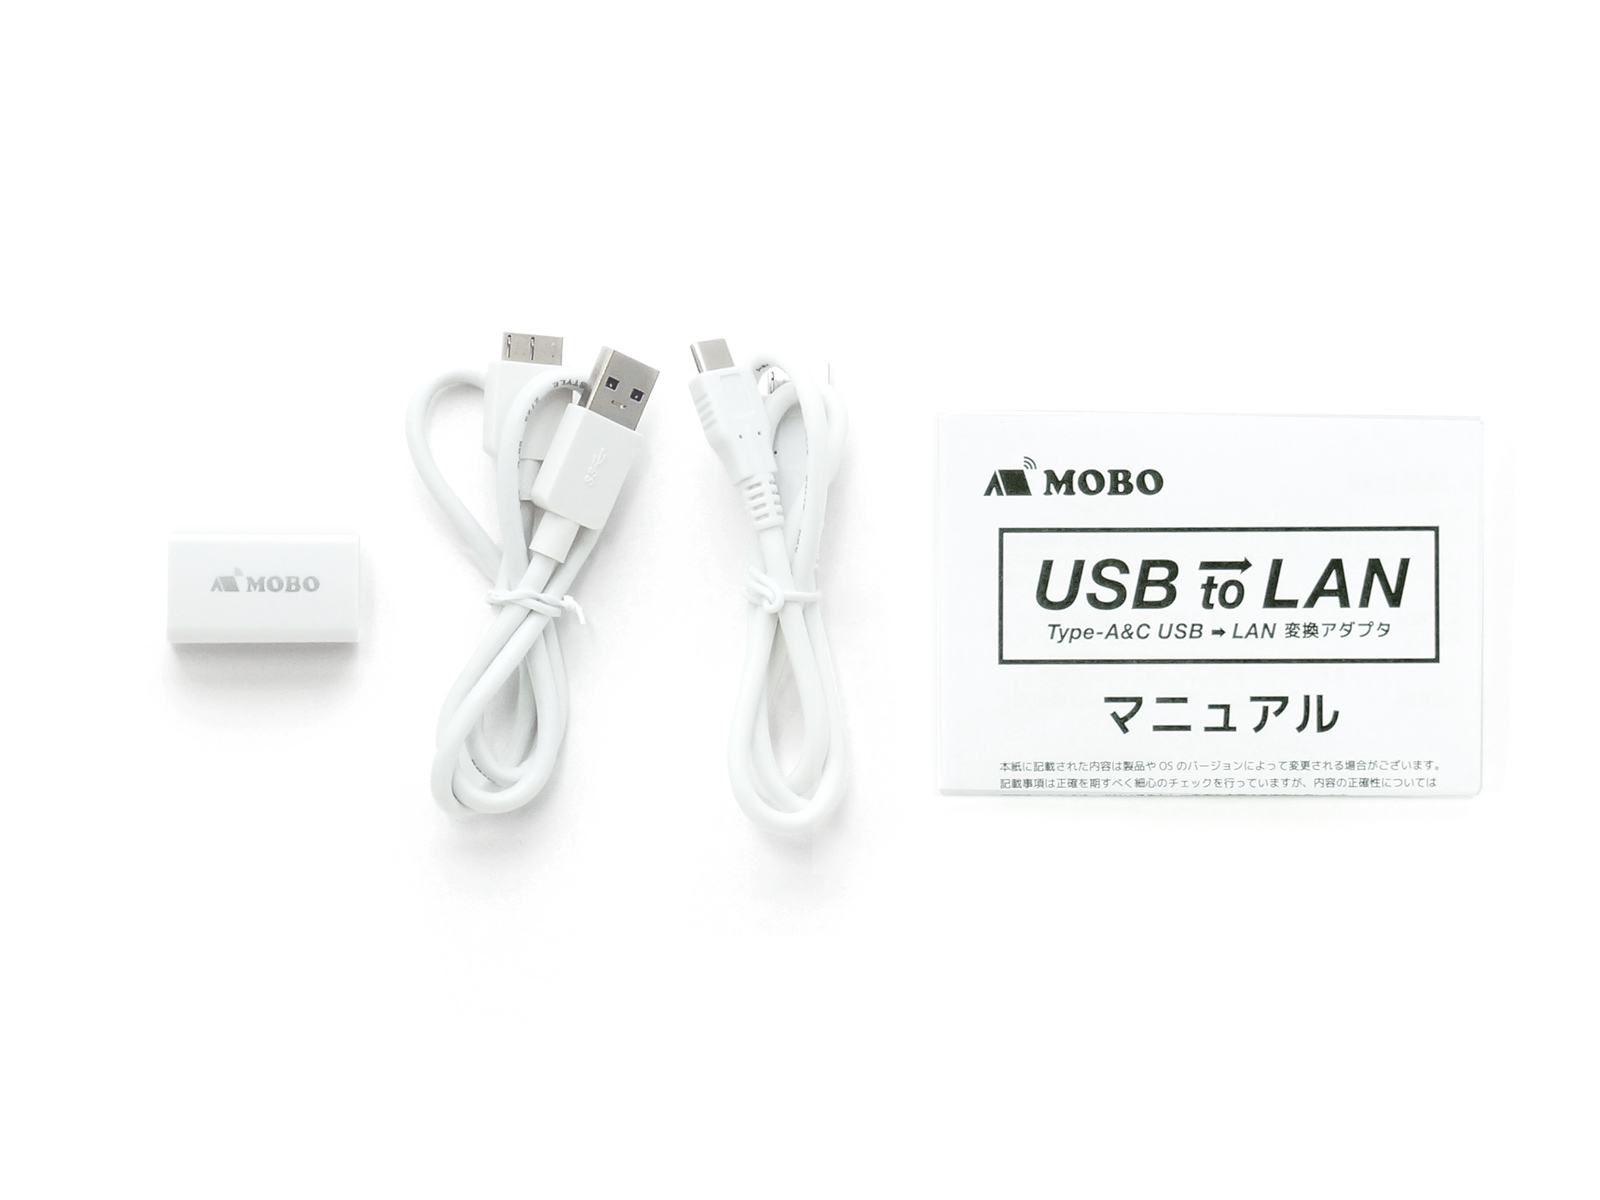 期間限定お試し価格 MOBO USBをLANに変換 USB-C USB-A両対応 Type-C Type-A 有線 LAN変換 アダプタ USB to LAN 小型 軽量 旅行先で動画再生やデータ転送に Gigabit LAN接続 1000 100 10 BASE-T AM-TCALAN